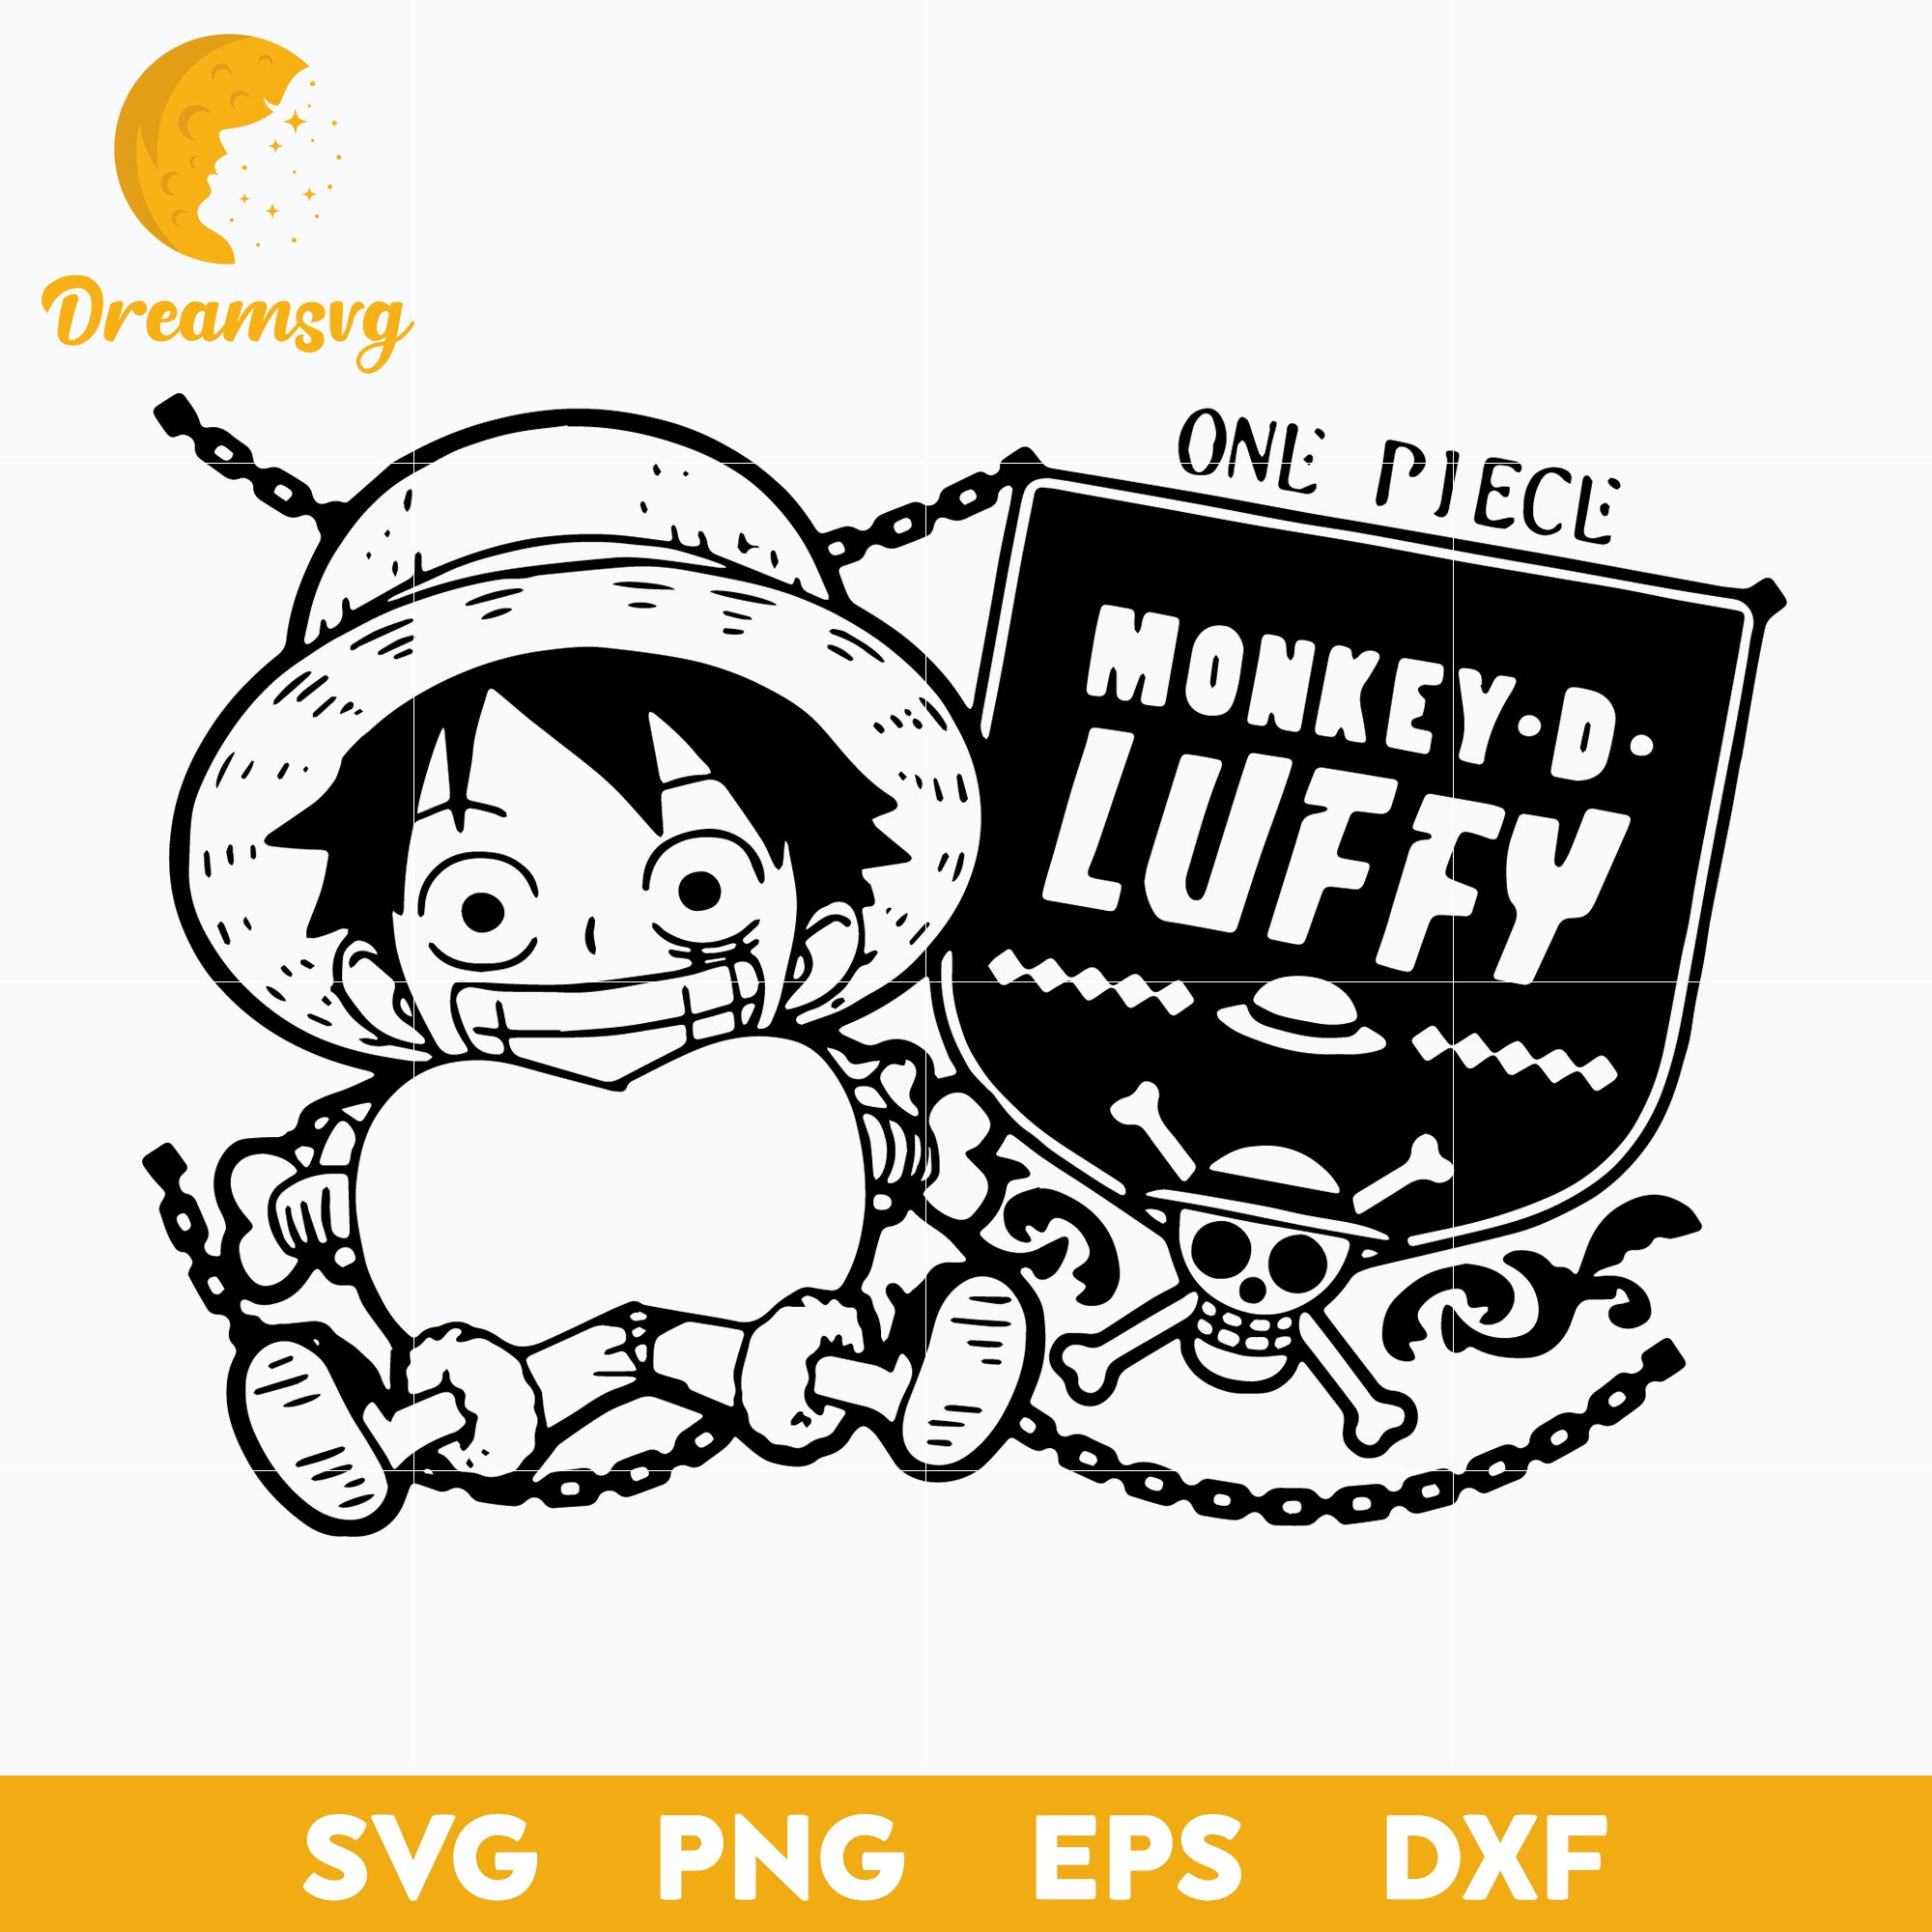 One Piece Monkey D Luffy Svg, One Piece Svg, Anime Svg, Monkey D Luffy Svg,  Luffy Svg, Png Dxf Eps Pdf File